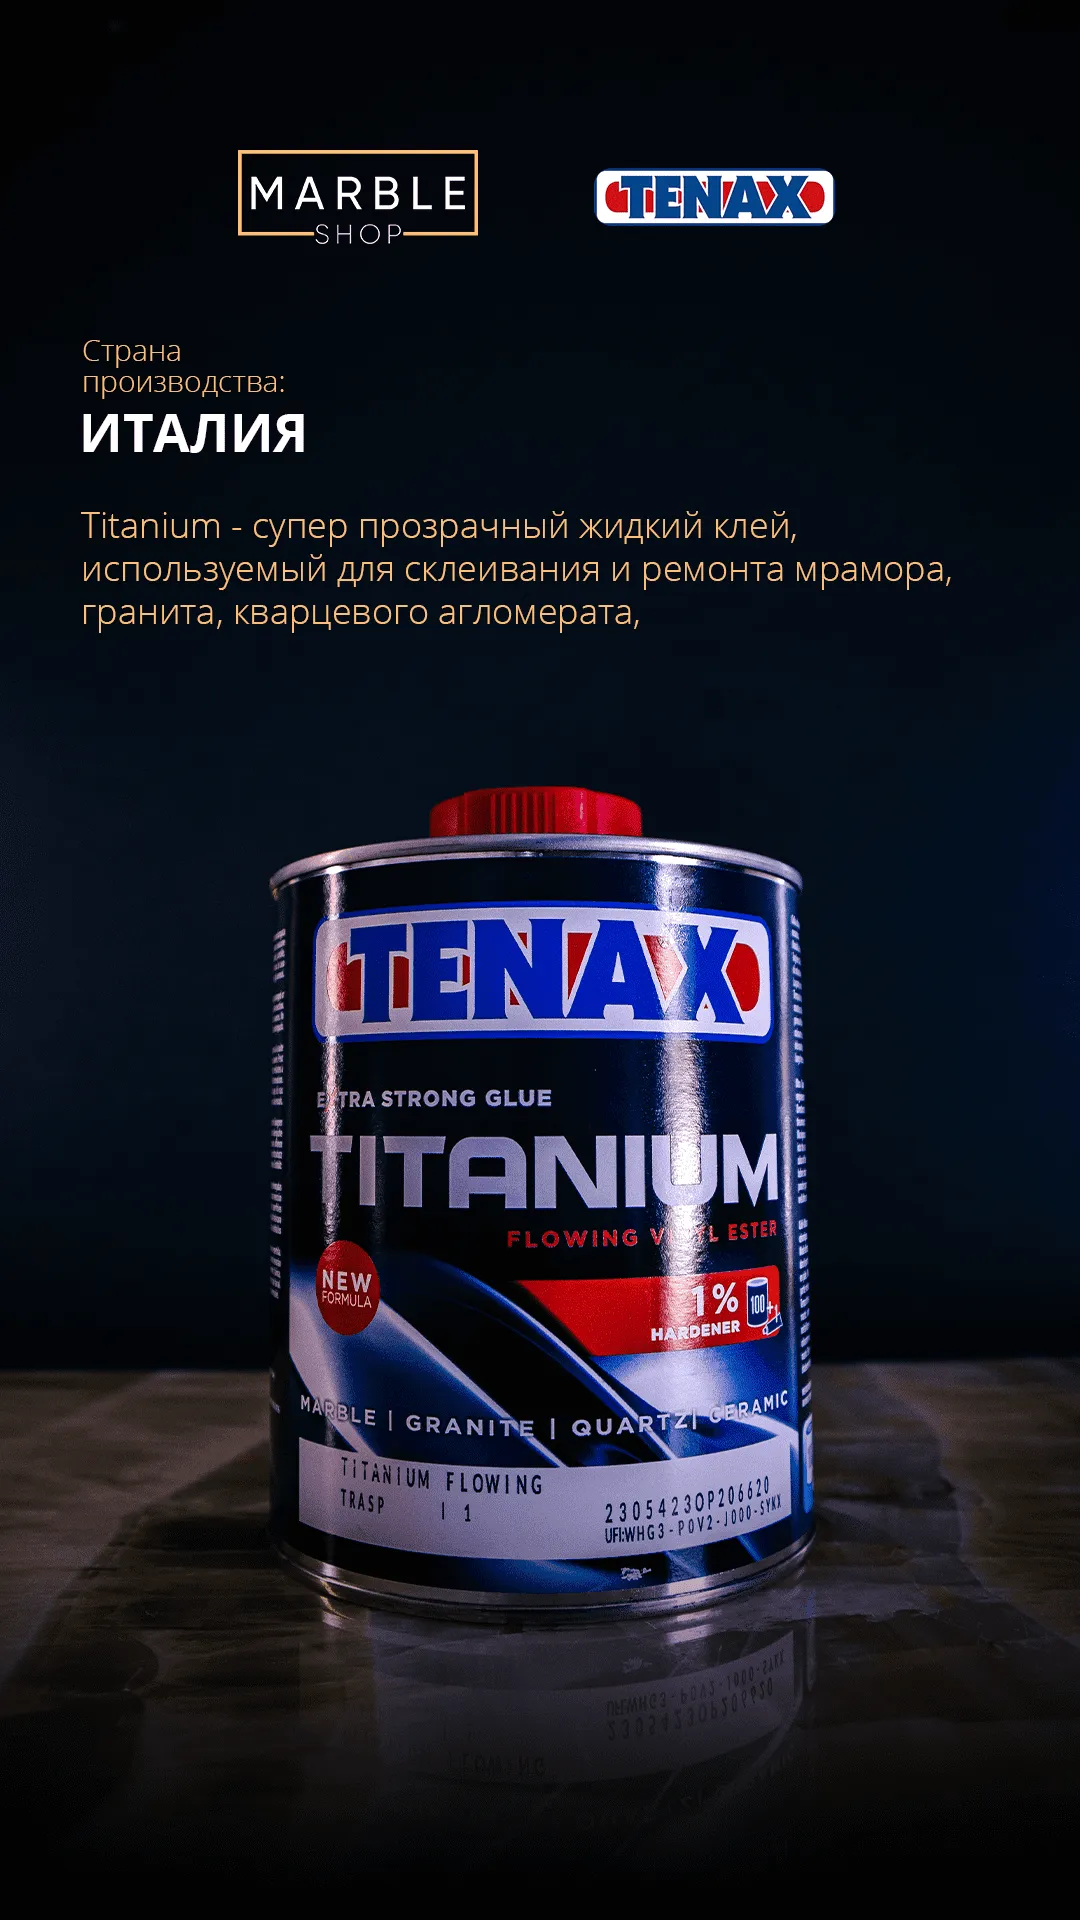 Tenax Titanium FLOWING TRASP polyester yopishtiruvchi#1